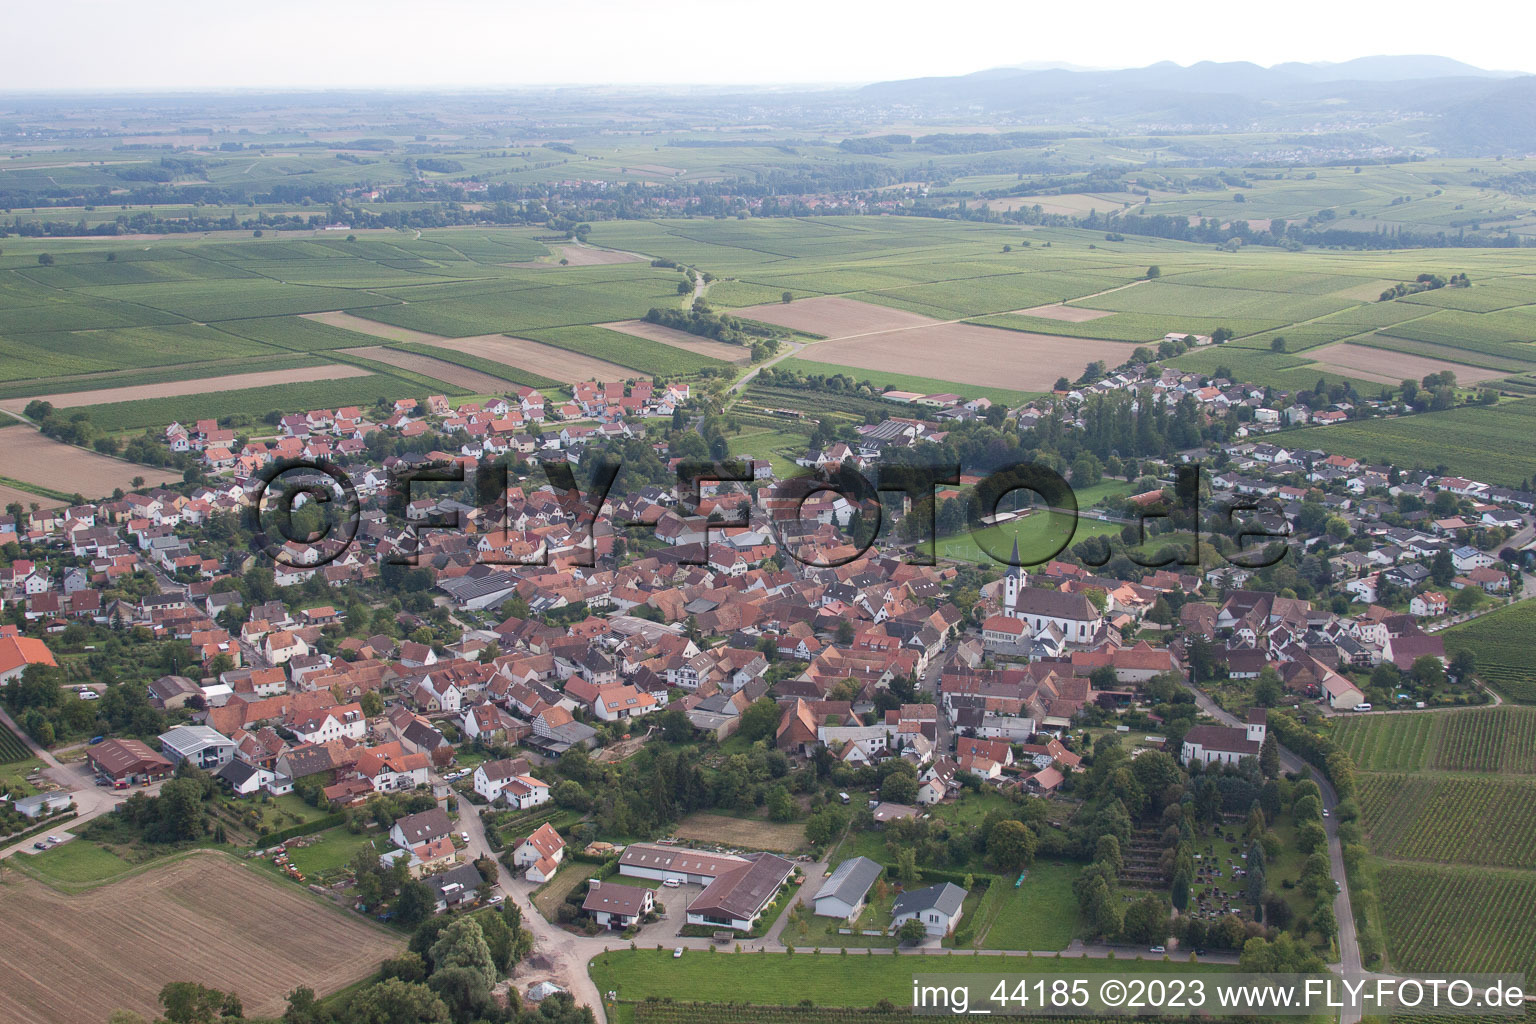 District Mörzheim in Landau in der Pfalz in the state Rhineland-Palatinate, Germany from the plane